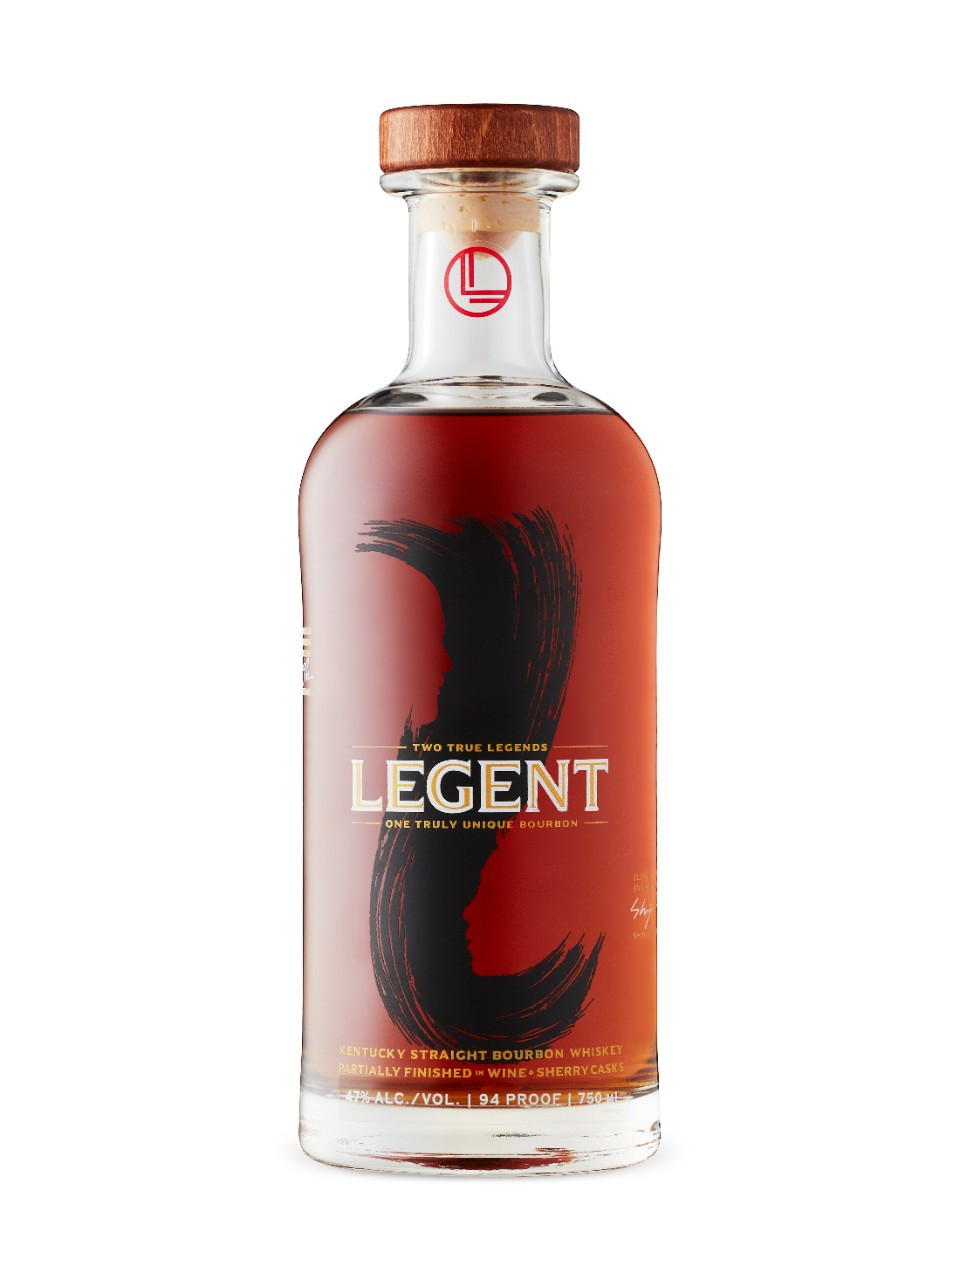 Legent Bourbon Review